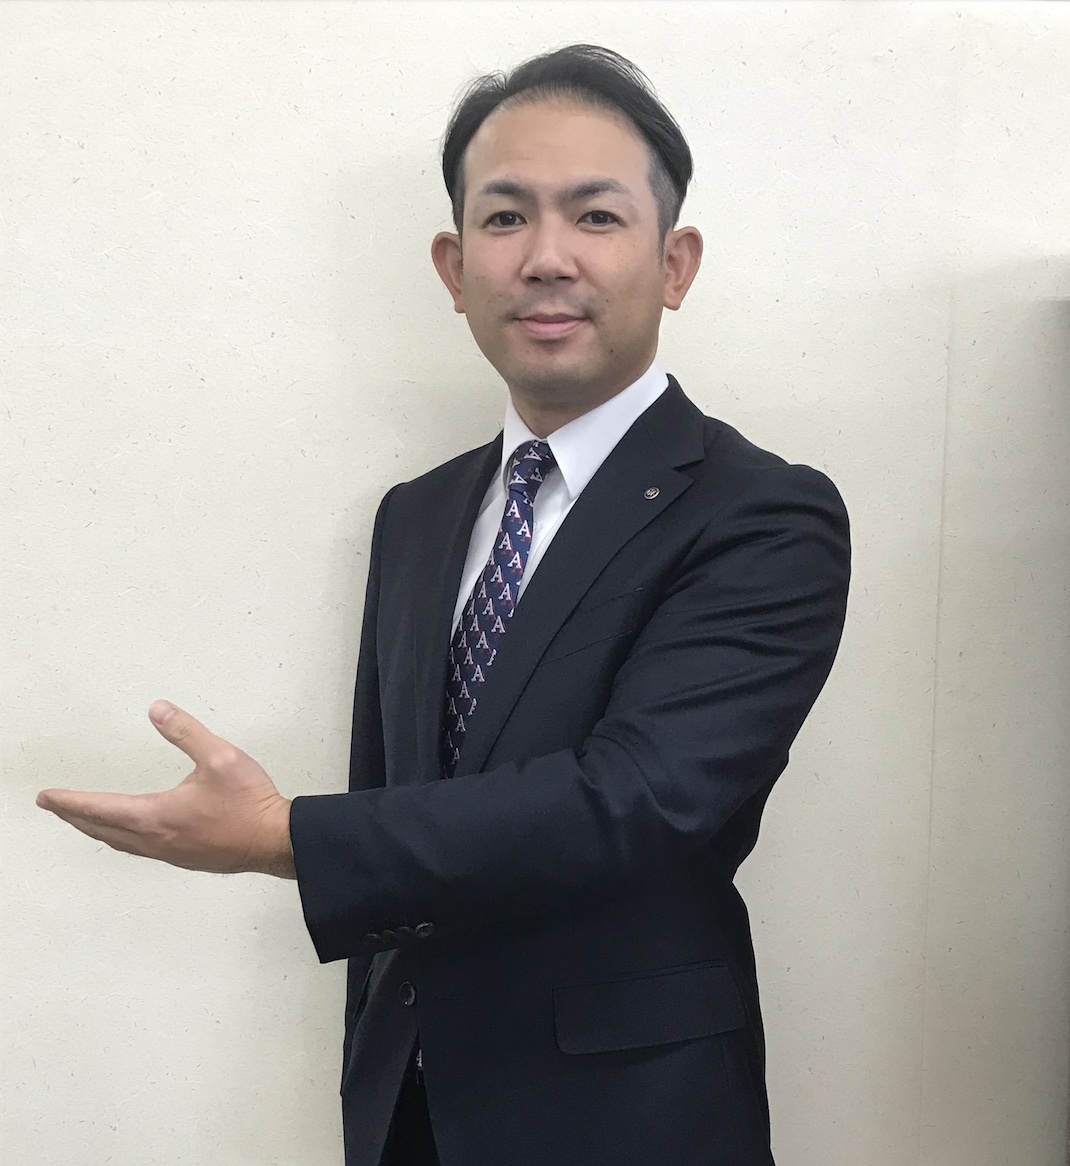 ベルにいがたグループ代表　（株）会津屋代表取締役　舩山博貴　がエンディングビジネスmission company story  に取材いただきました。